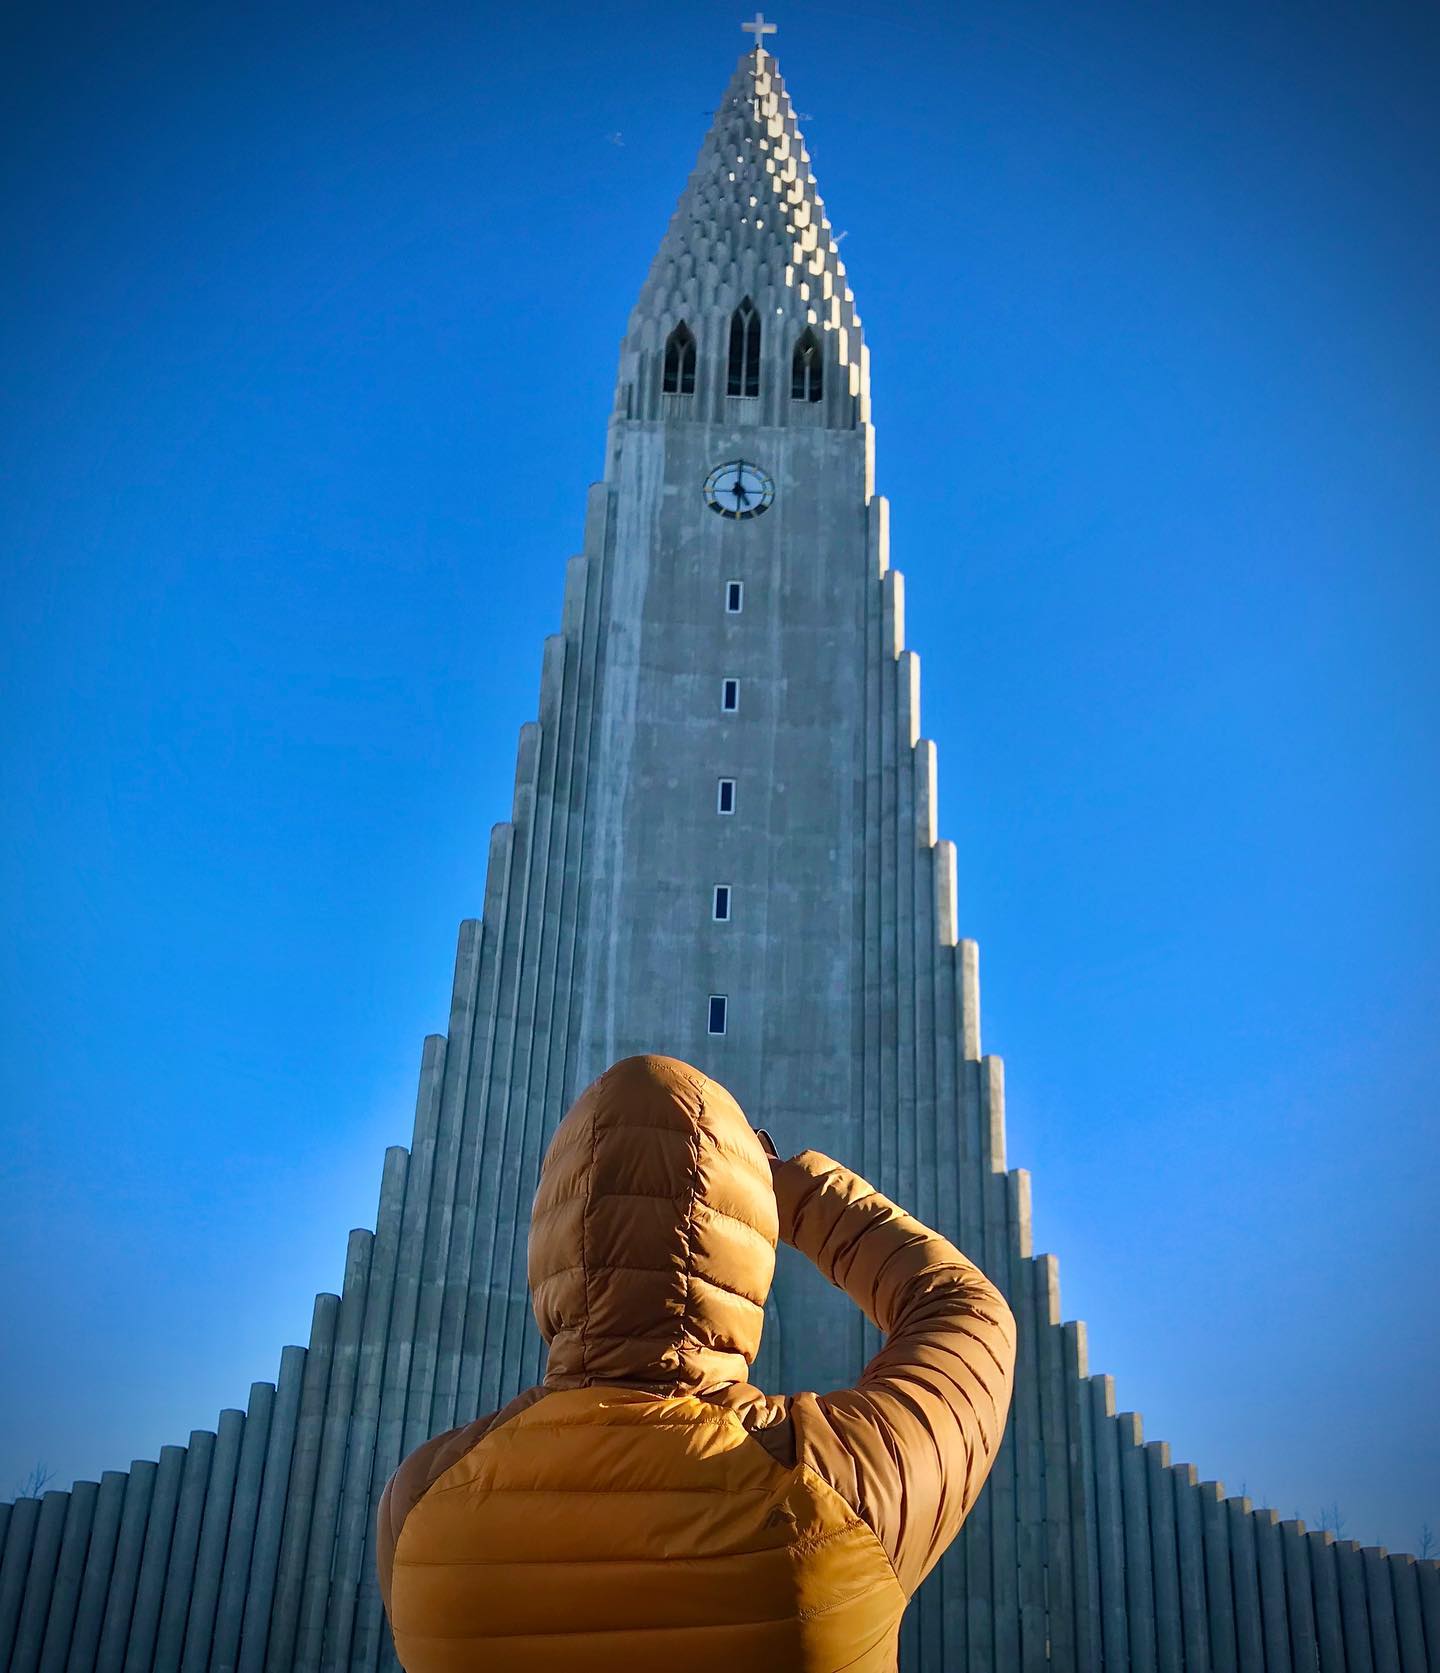 #iceland2020 #traveltheworld #reykjavik #reykjavikiceland #hallgrimskirkjachurch #iconoficeland #hubbyinaction